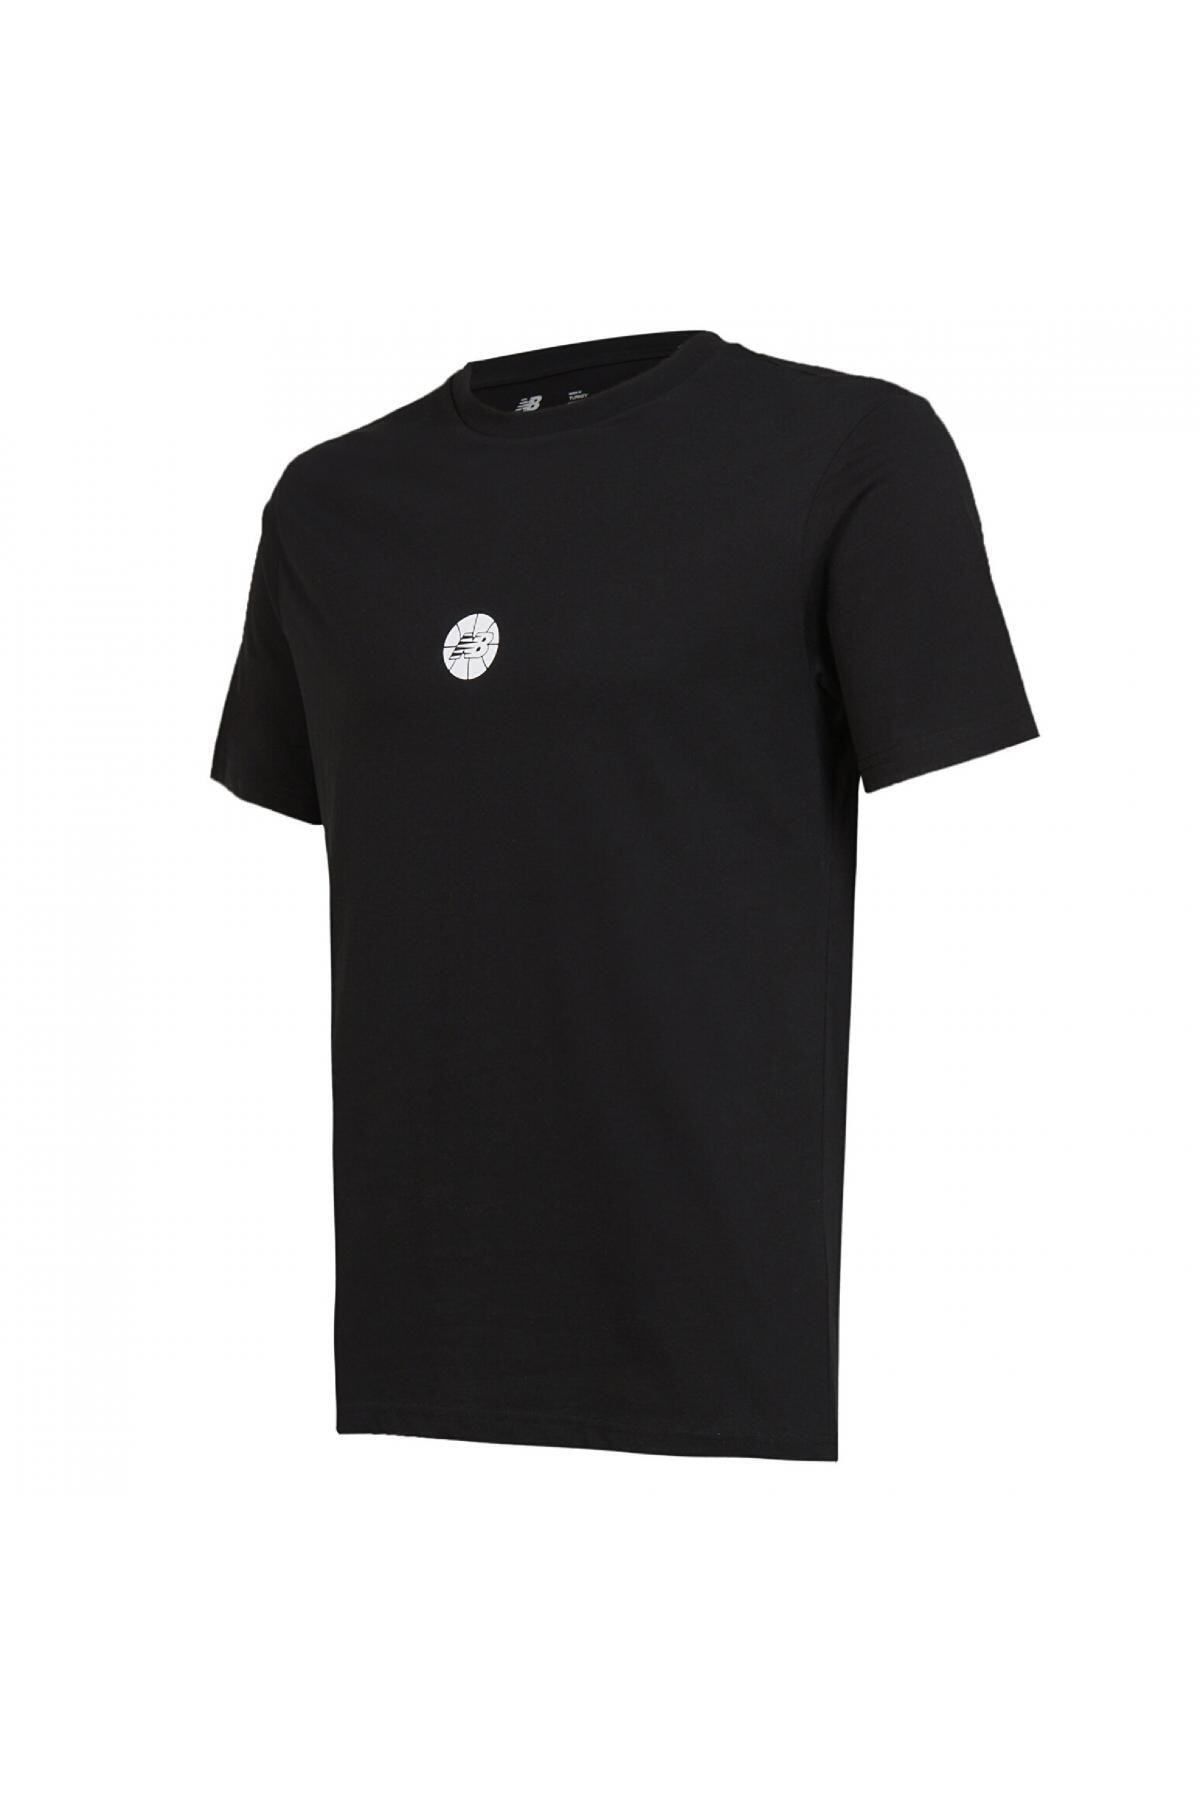 New Balance Mnt1343 Nb Man Lifestyle Siyah Erkek T-shirt